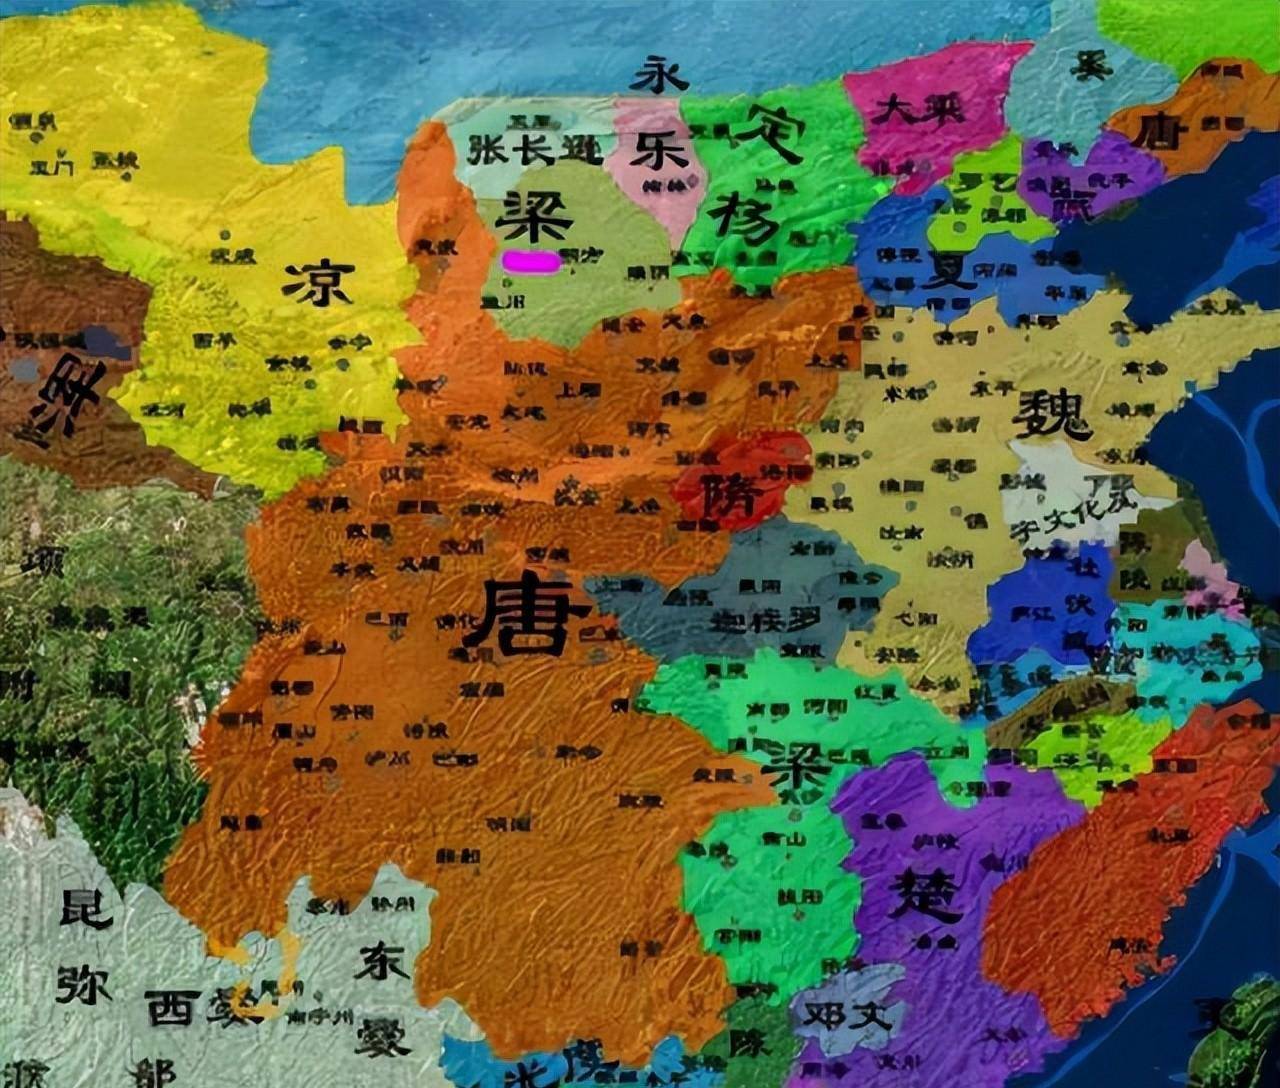 原创
            盘点中国历史上的六大乱世，每一个都堪称乱世之最插图16